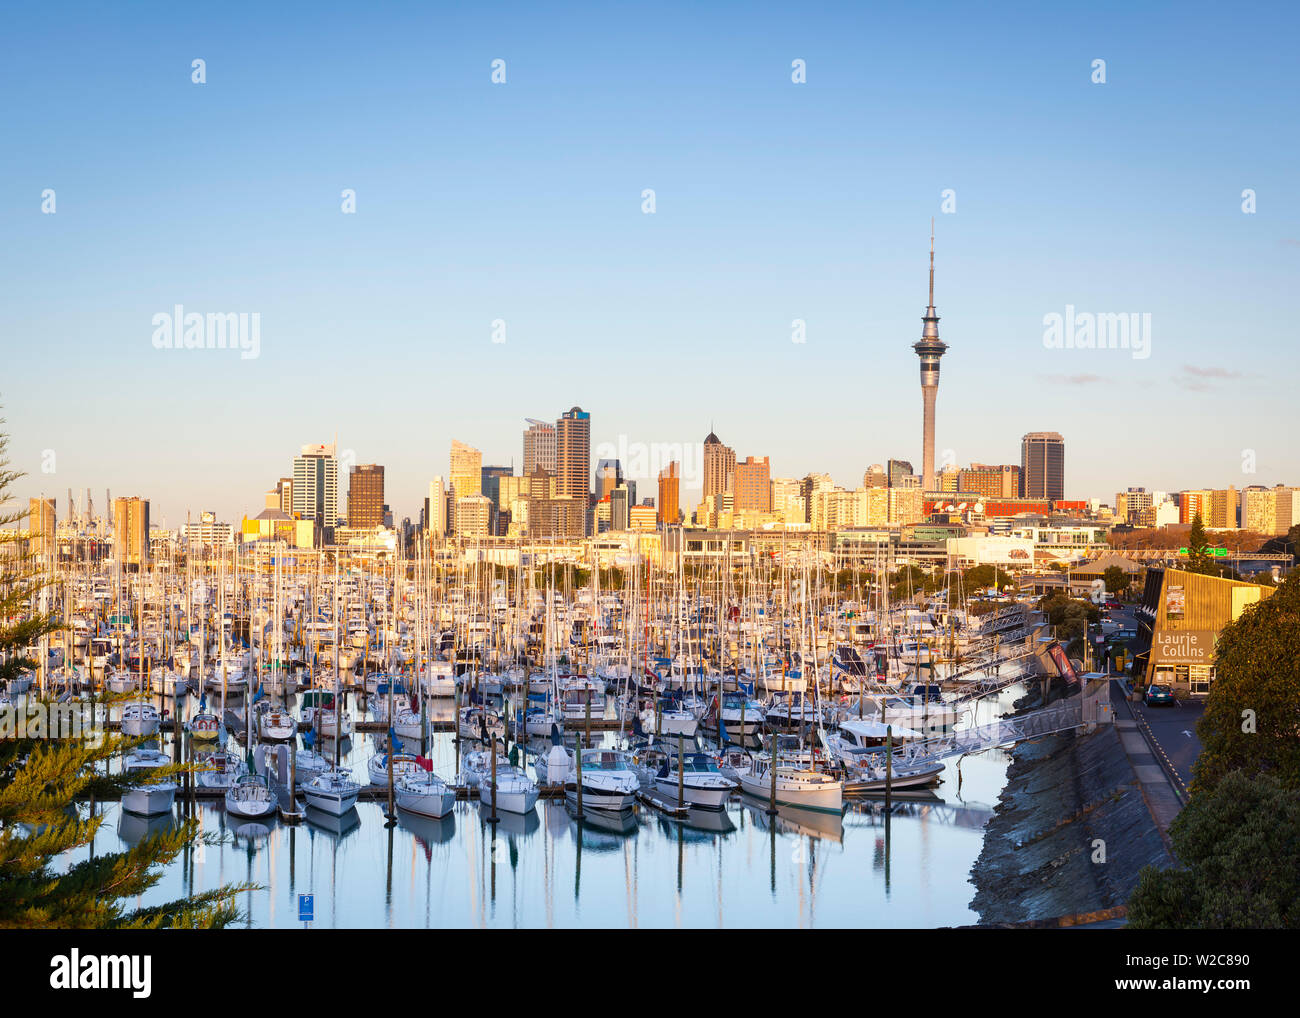 Westhaven Marina & Skyline der Stadt leuchtet bei Sonnenuntergang, Waitemata Harbour, Auckland, Nordinsel, Neuseeland, Australien Stockfoto